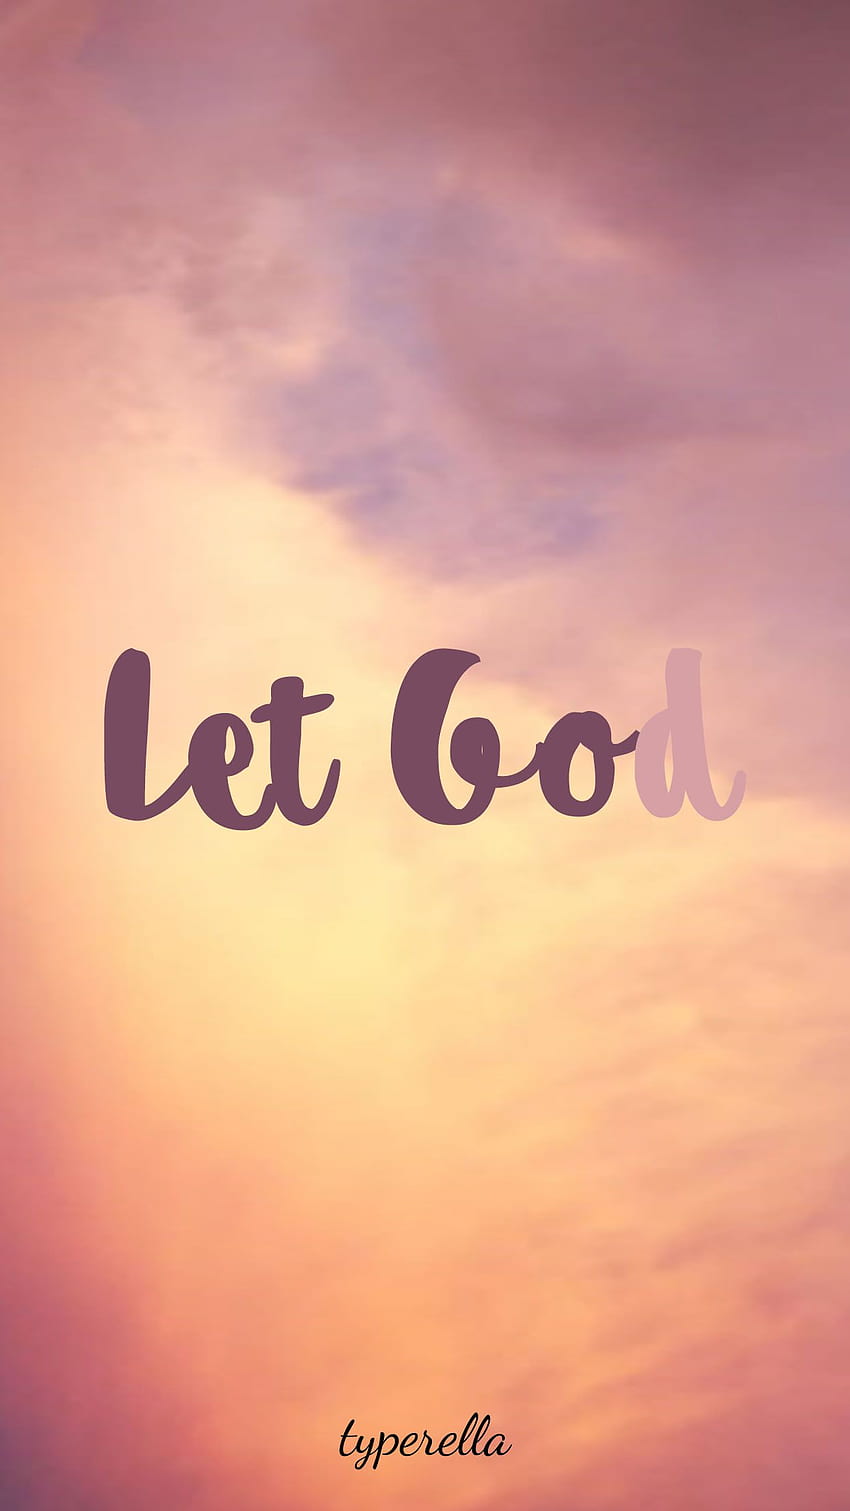 Let go and let God  Let go and let god Let god God